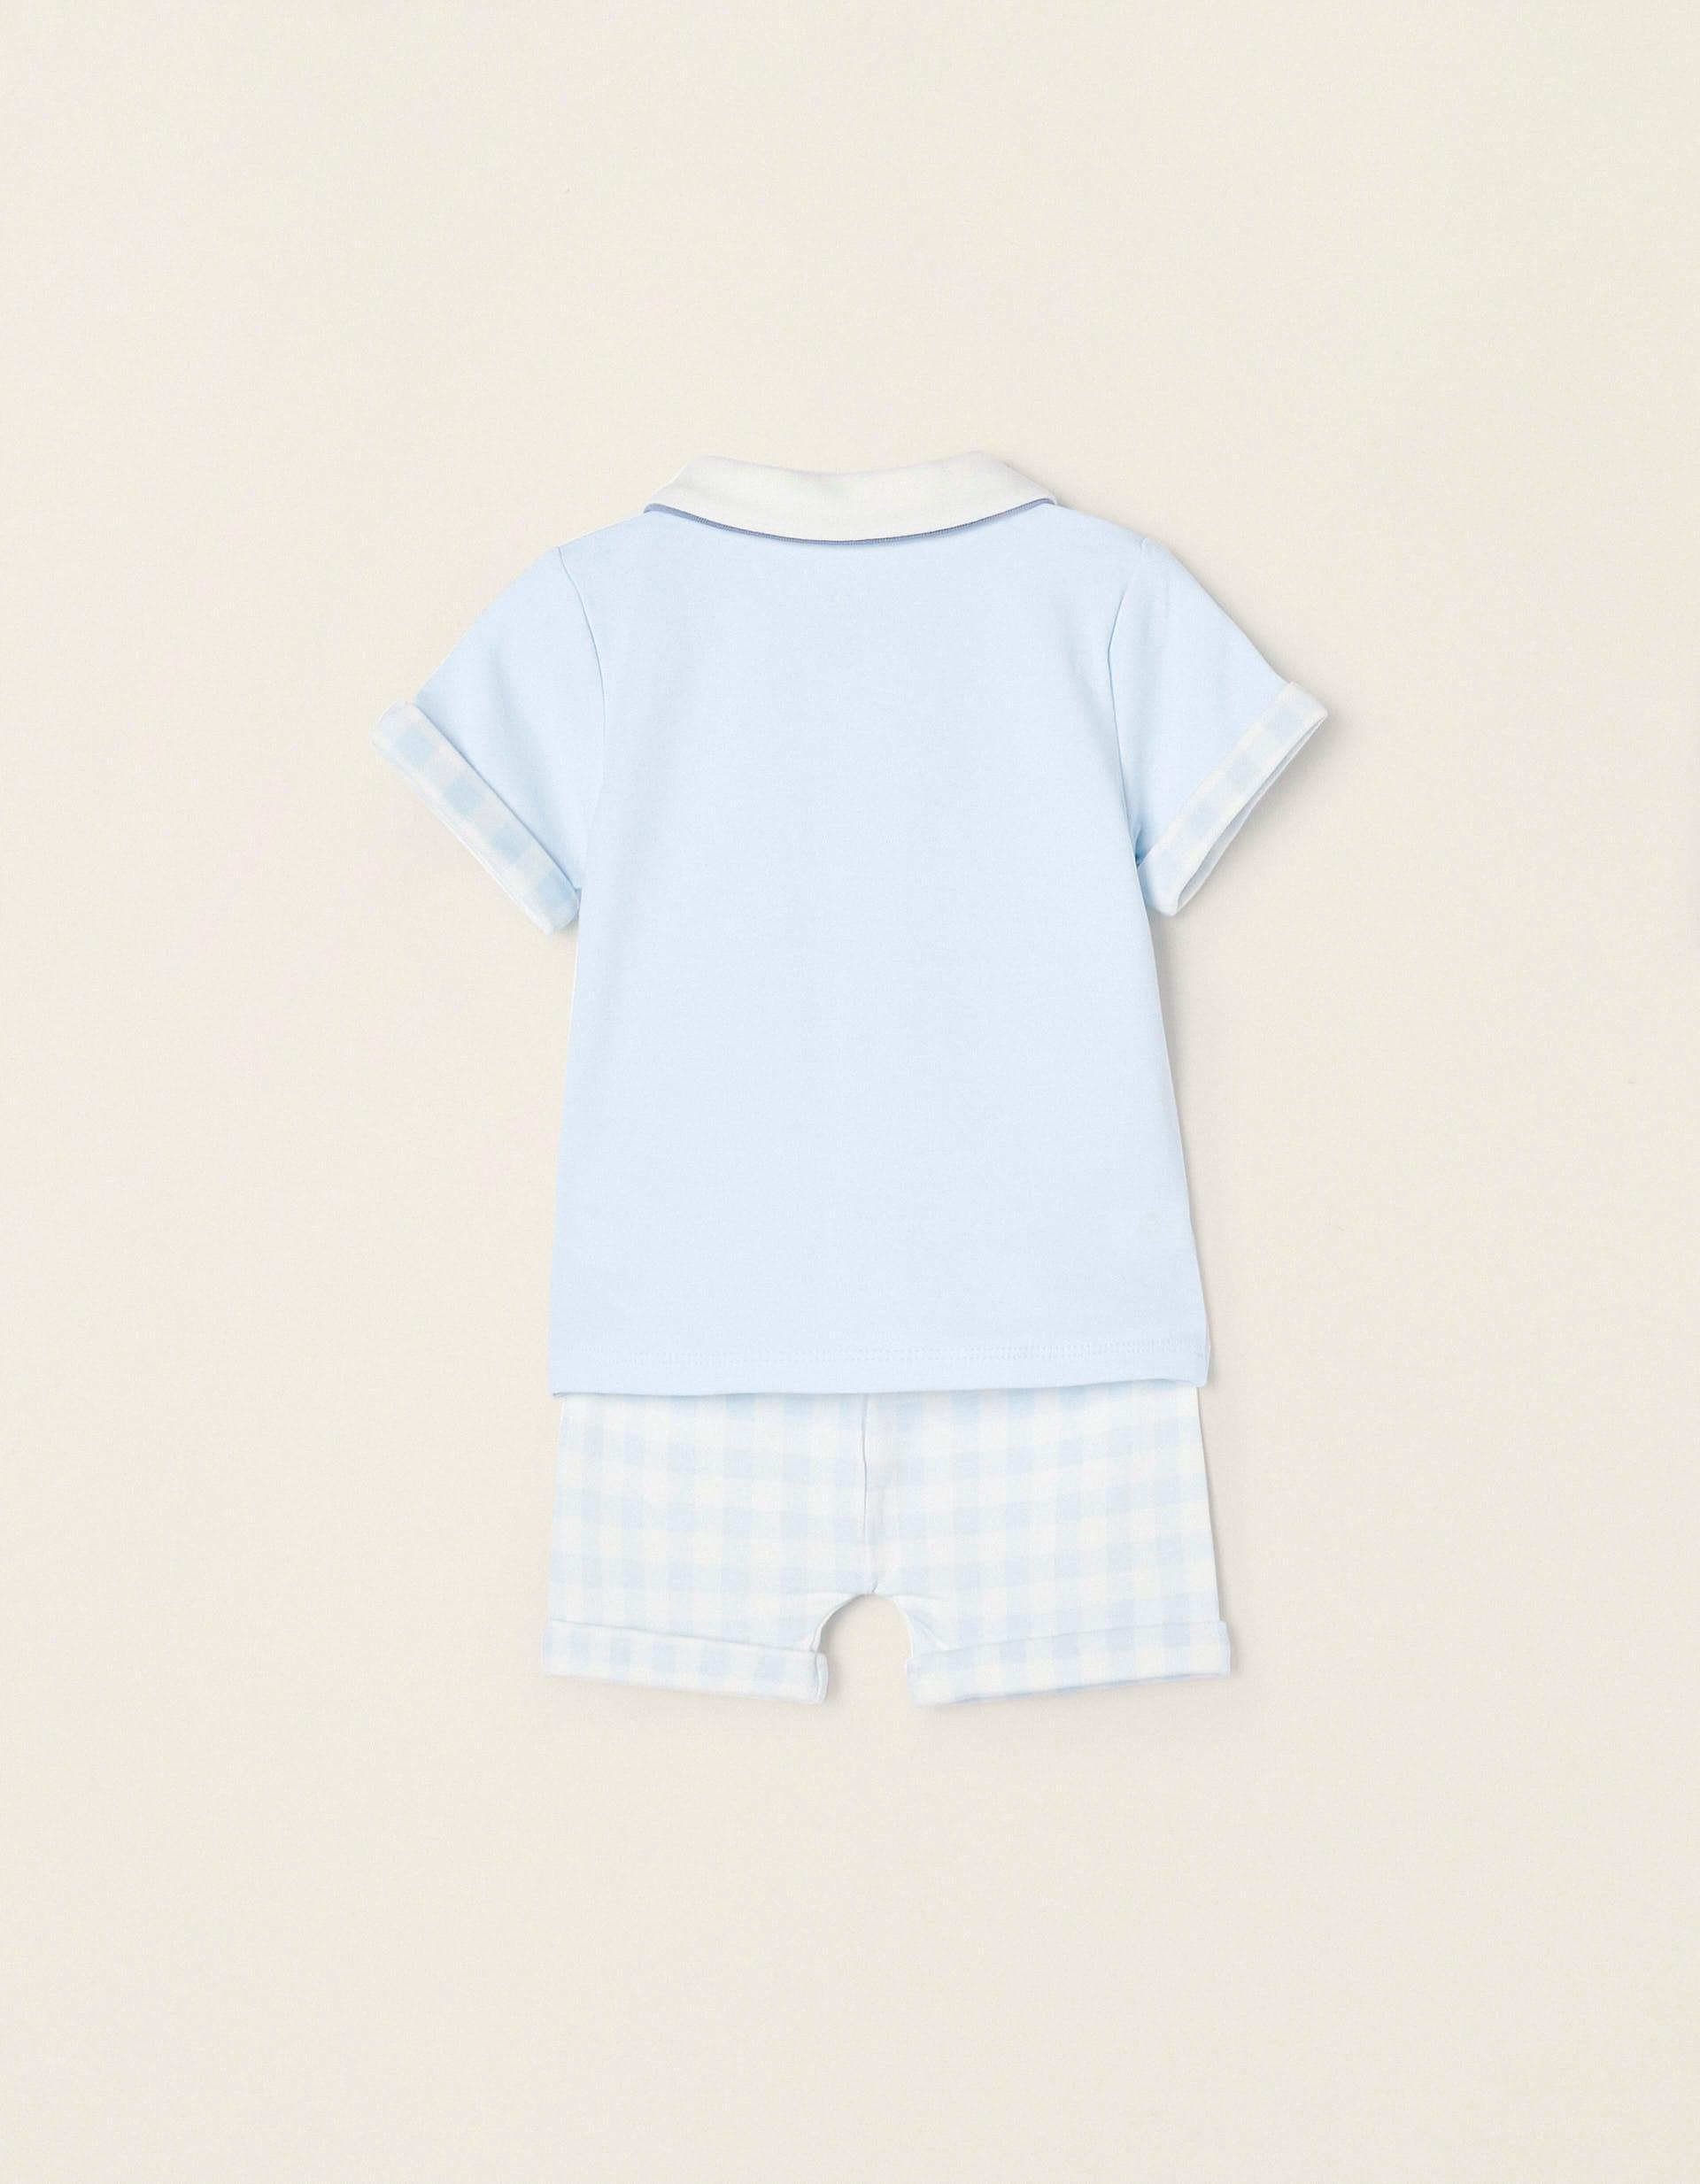 Zippy - Blue Pyjamas, Baby Boys